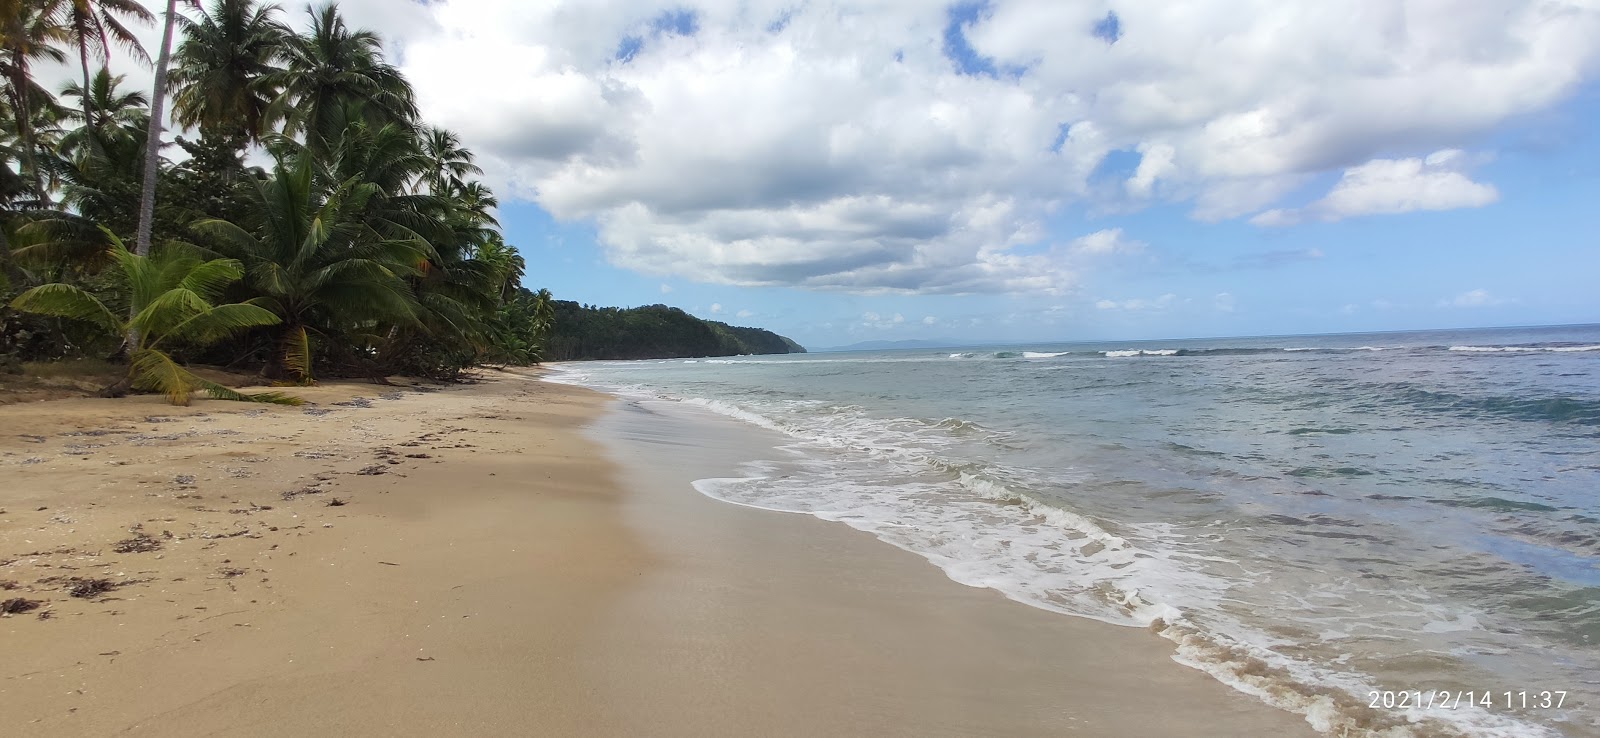 Foto de Playa Expiracion de Coson com areia fina e brilhante superfície